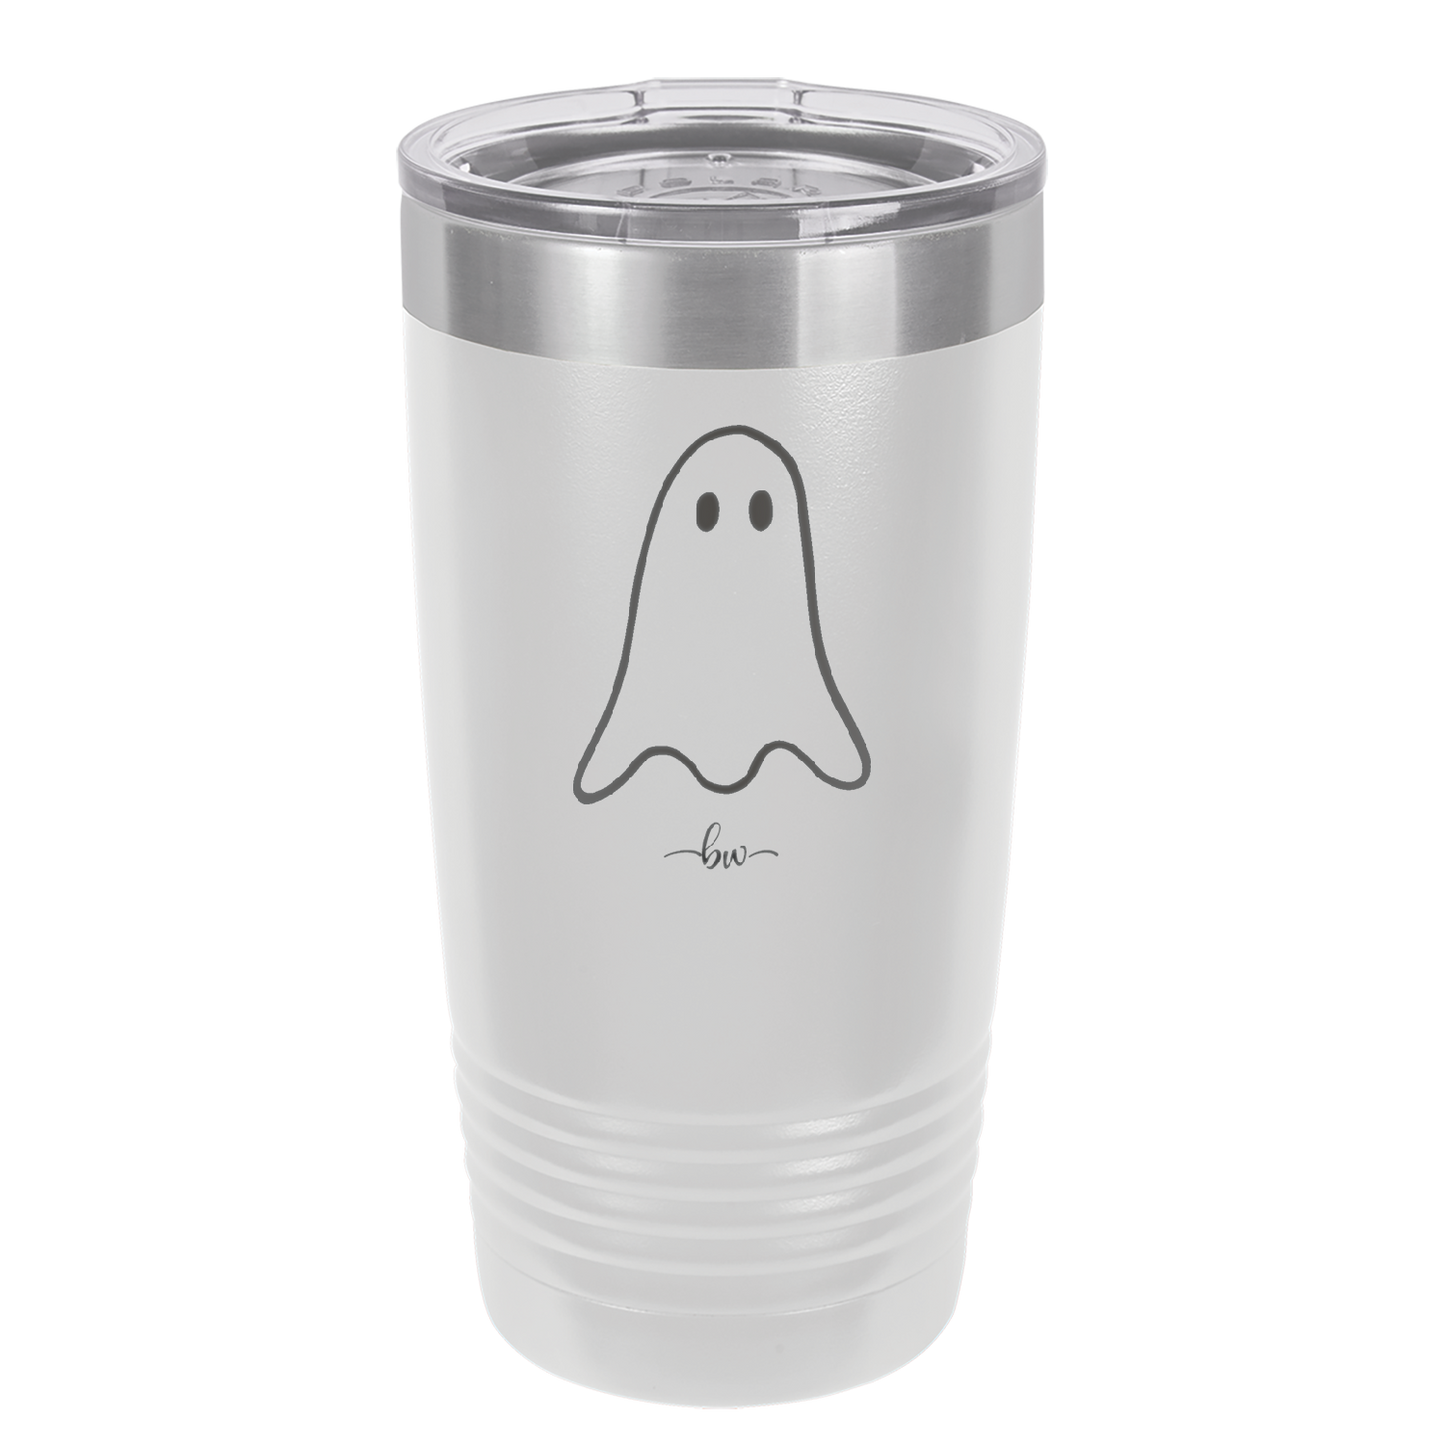 Ghost Guy - Laser Engraved Stainless Steel Drinkware - 1529 -